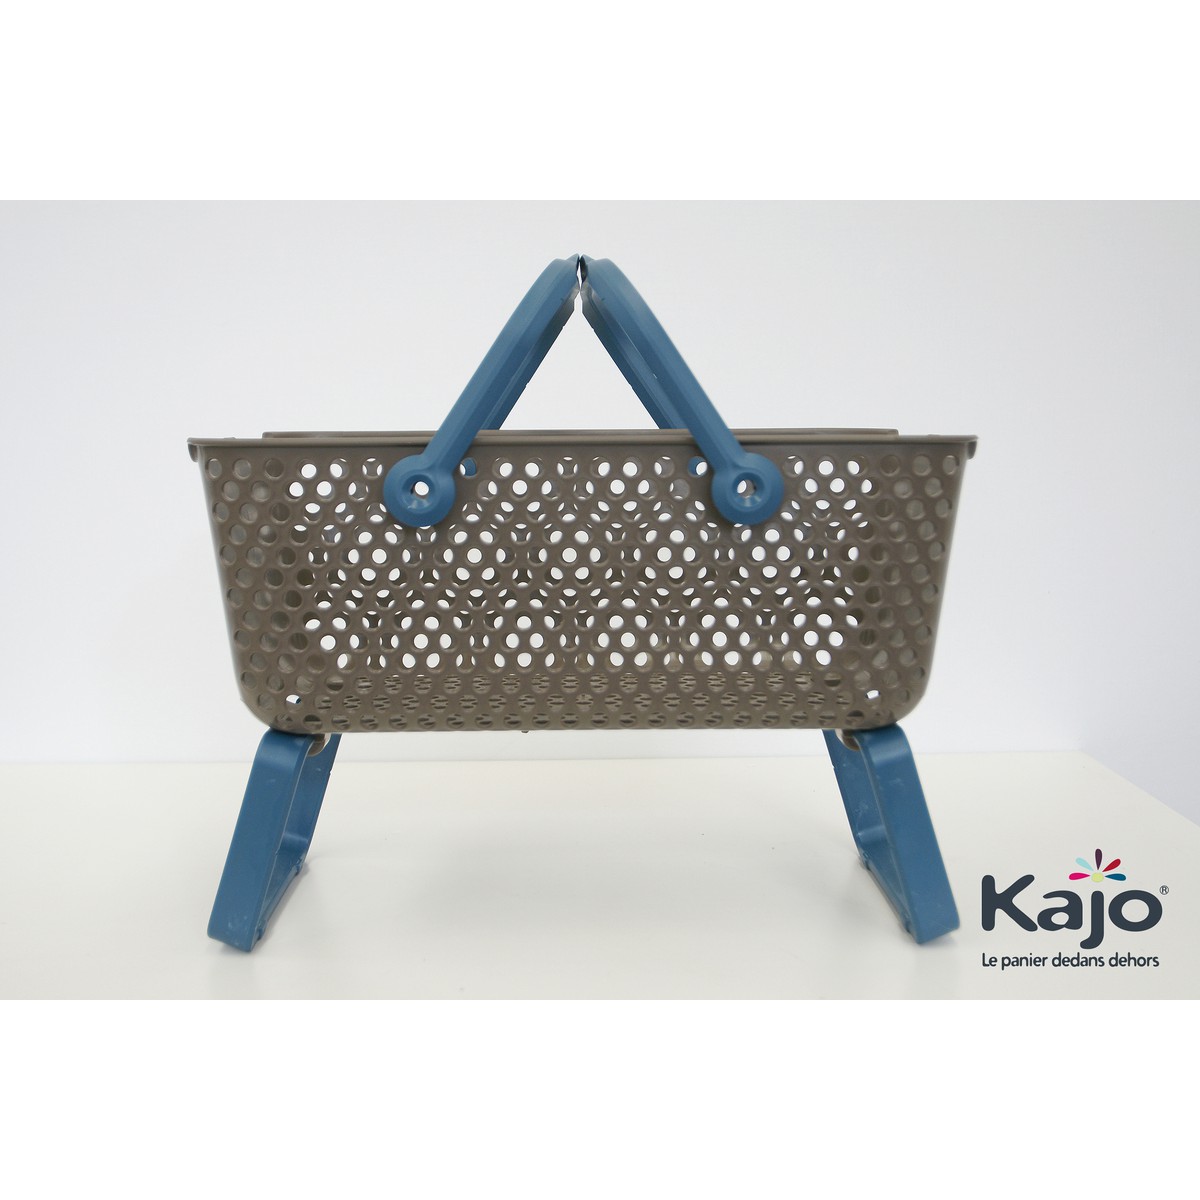 Kajo  Kajo 15L  taupe/azur Bleu azur clair 48x29x20